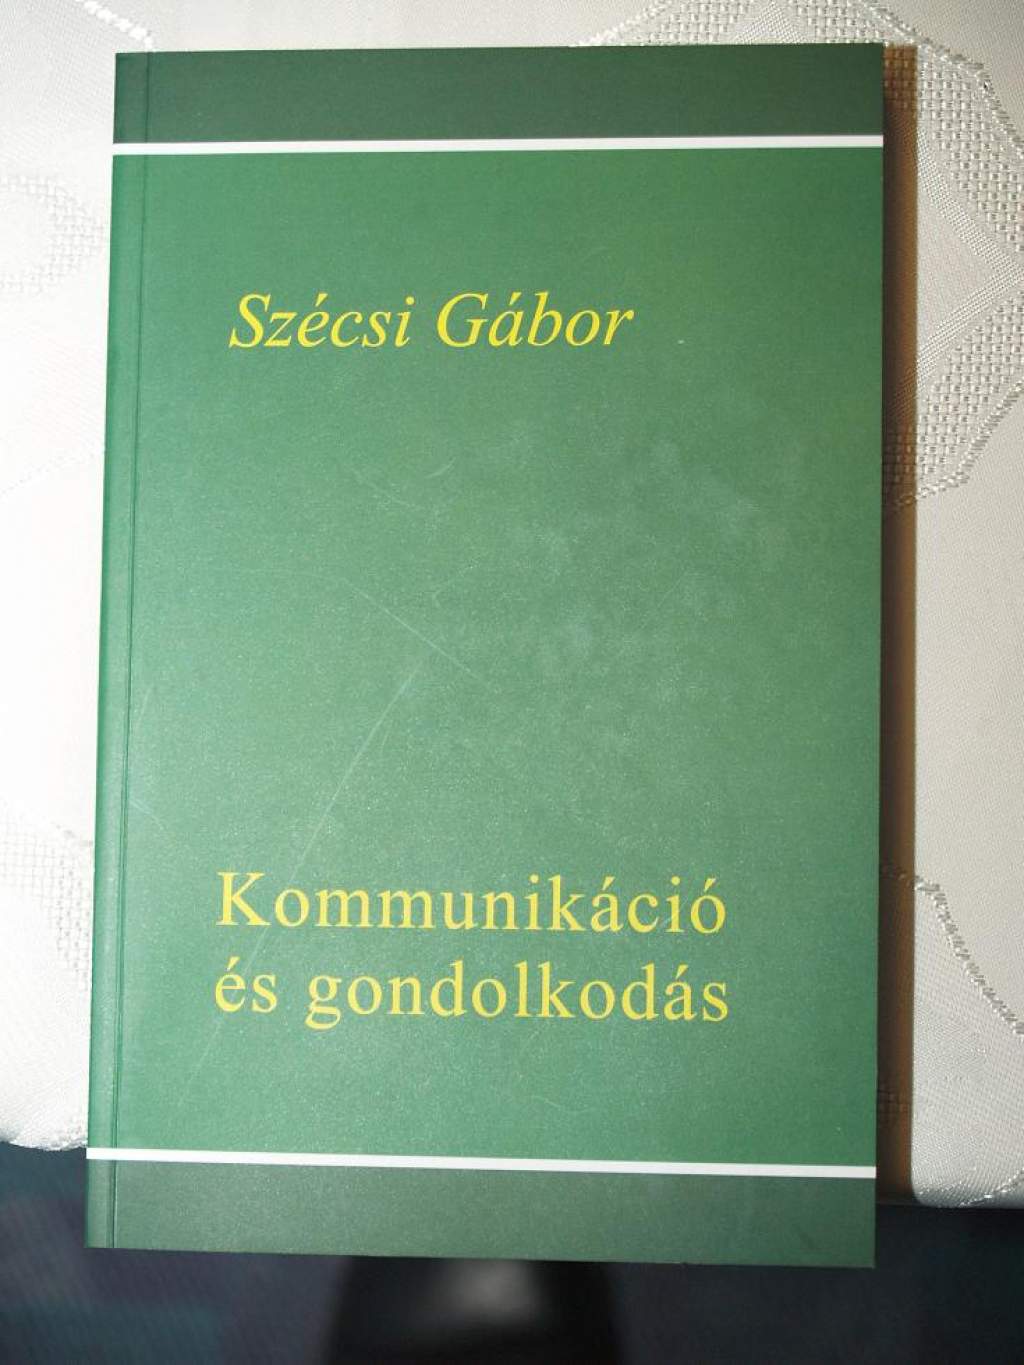 KOMMUNIKÁCIÓ ÉS GONDOLKODÁS - Szécsi Gábor könyvbemutatója